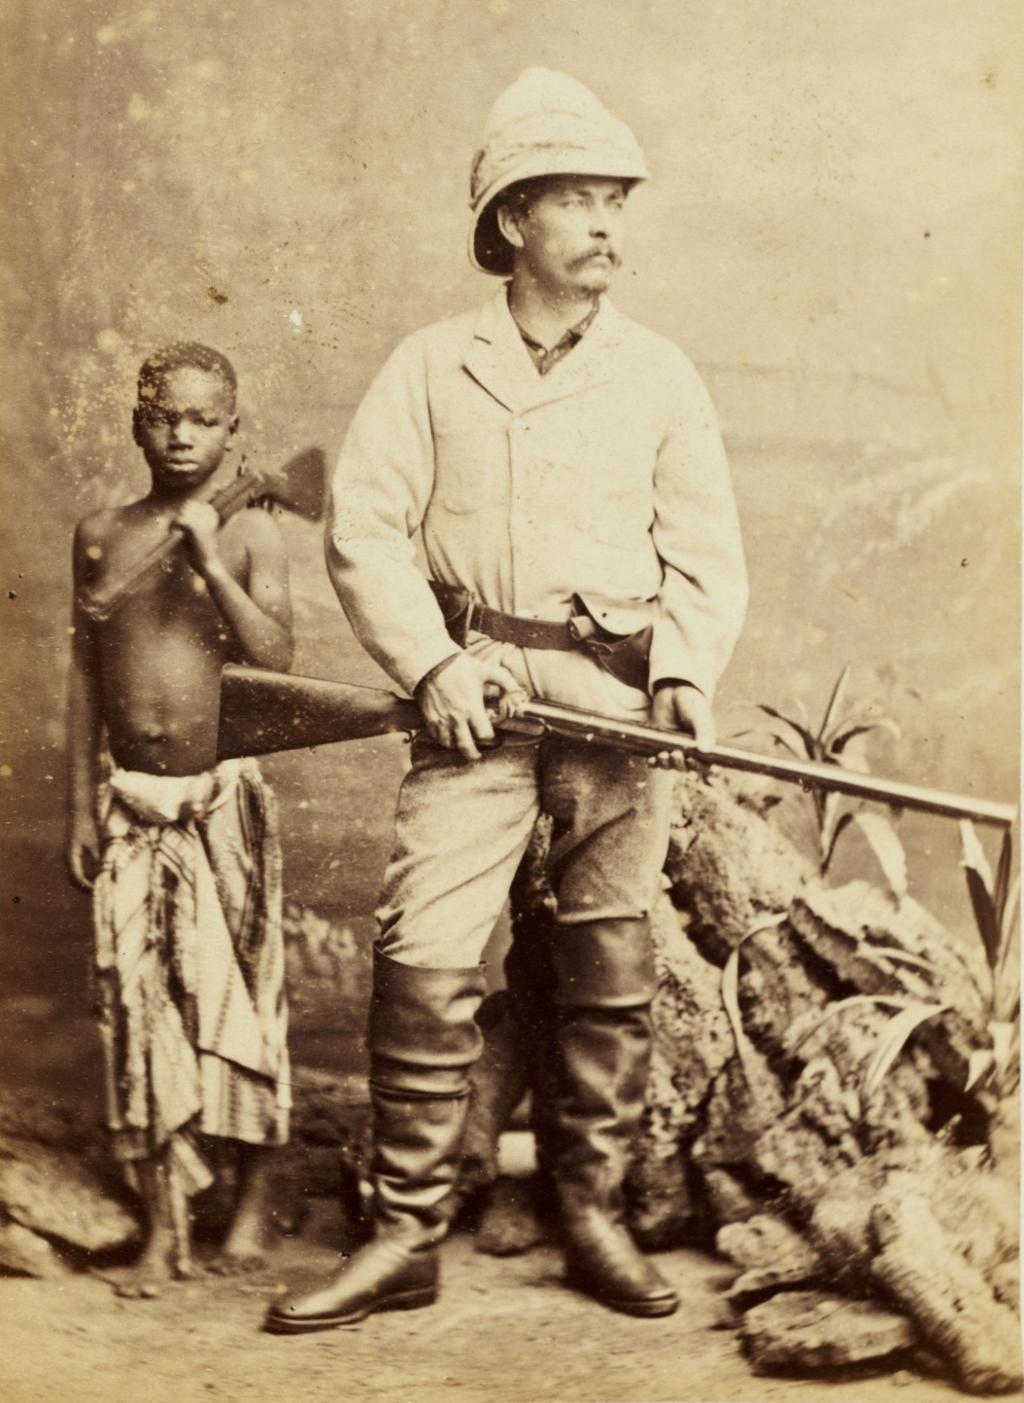 Henry Morton Stanley, britisk journalist og oppdager i Afrika, sammen med sin personlige tjener og adopterte sønn Kalulu. Kalulu står i bakgrunnen. Stanley poserer med gevær. Foto.